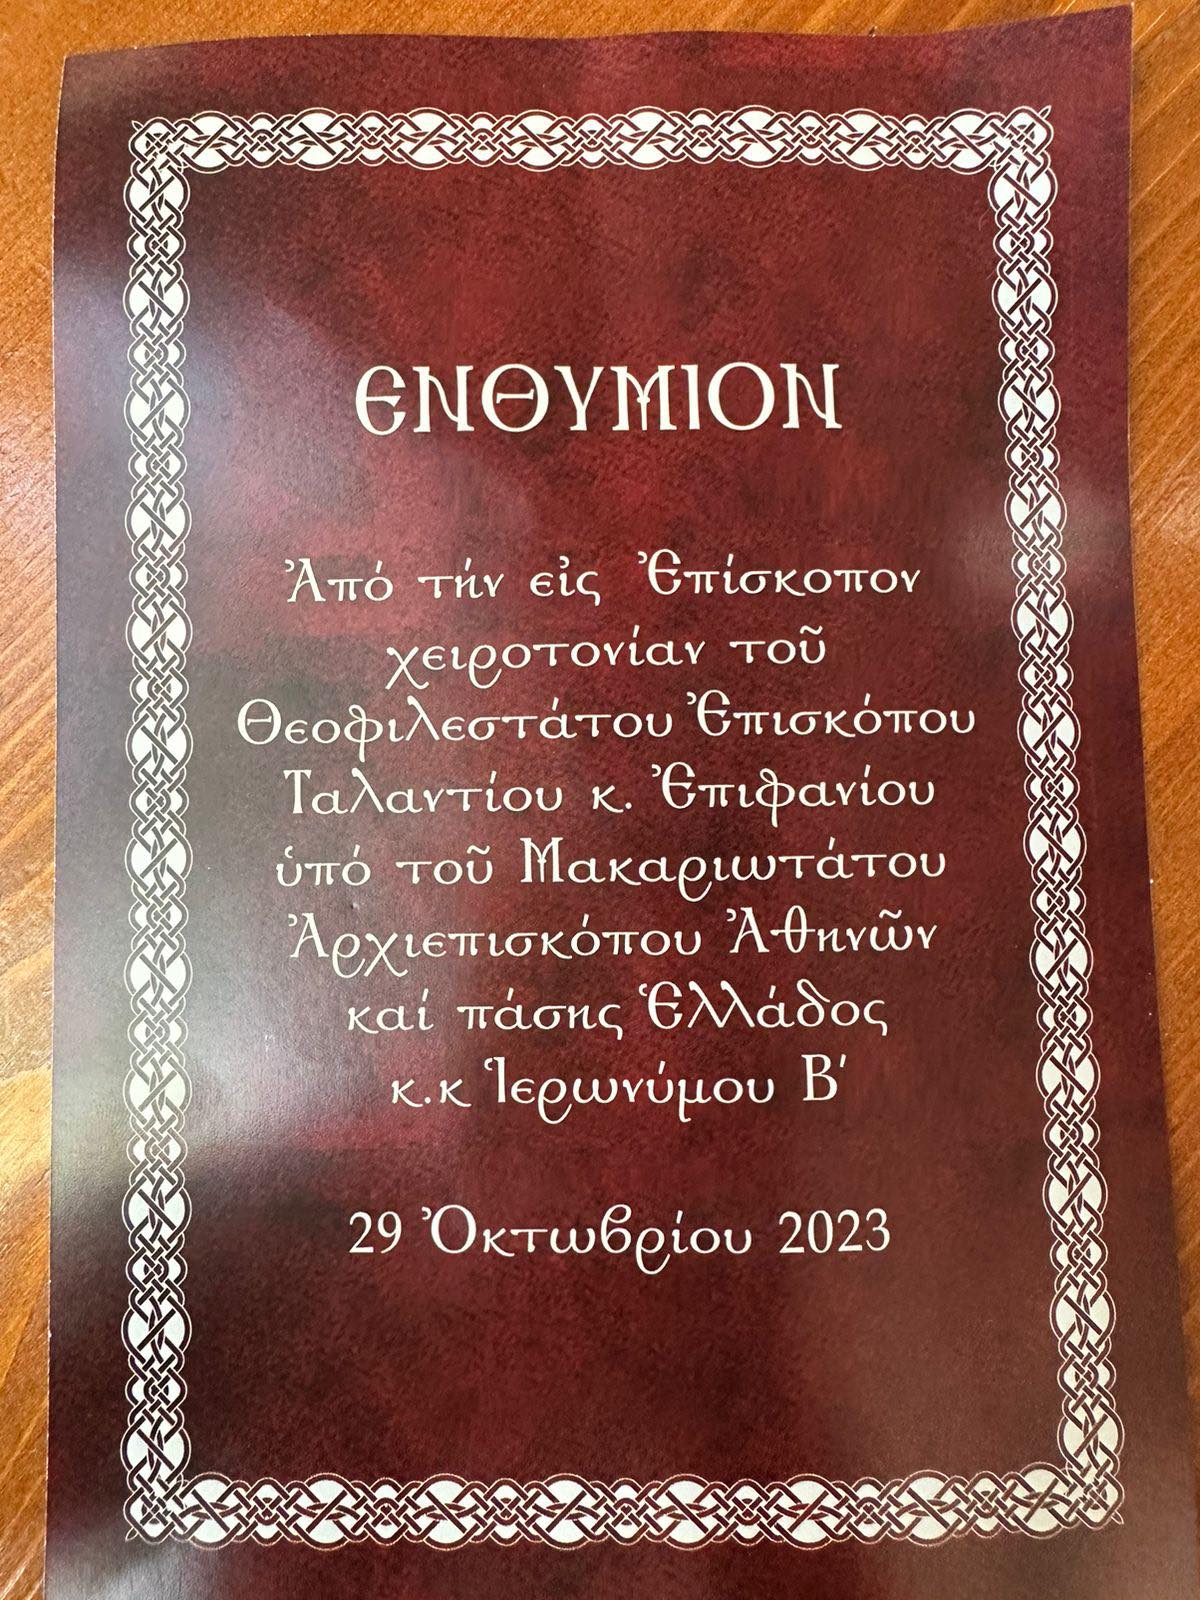 Η χειροτονία του νέου Αγρινιώτη Επισκόπου Ταλαντίου Επιφανίου Καραγεώργου στην Μητρόπολη Αθηνών (εικόνες & βίντεο)